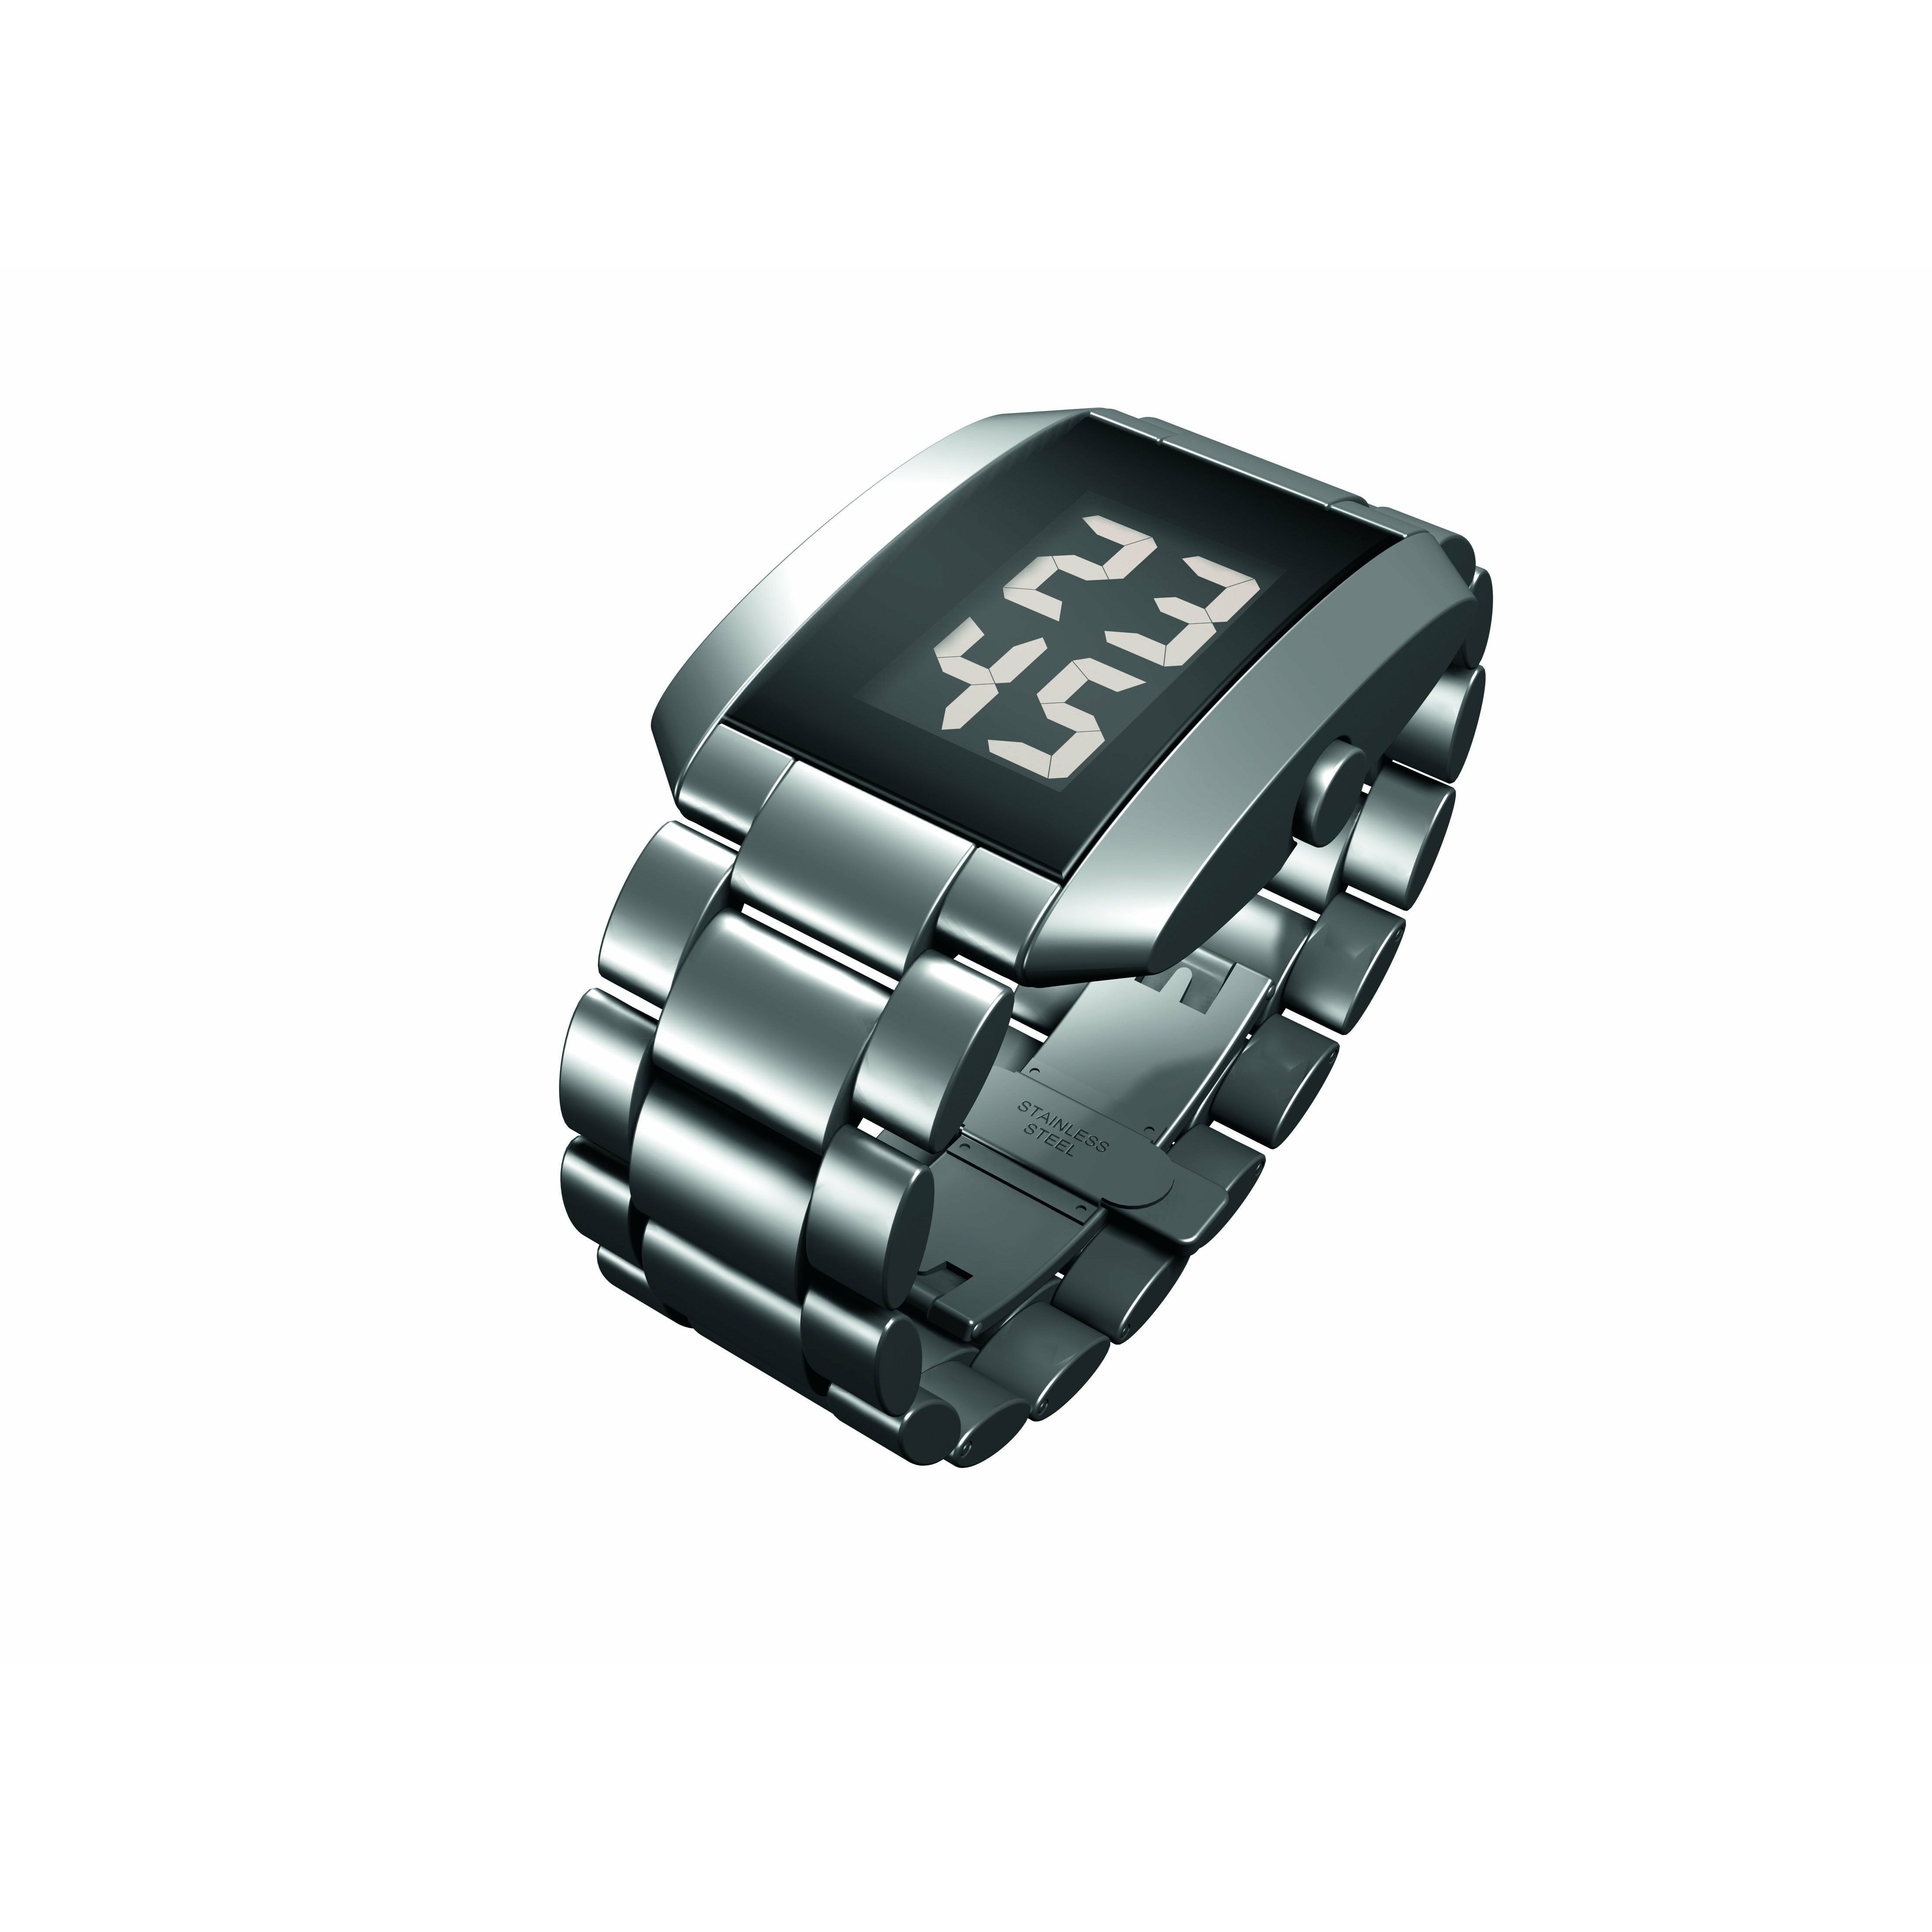 Rosendahl Armband Watch 3 Digital Silver, 28x38mm